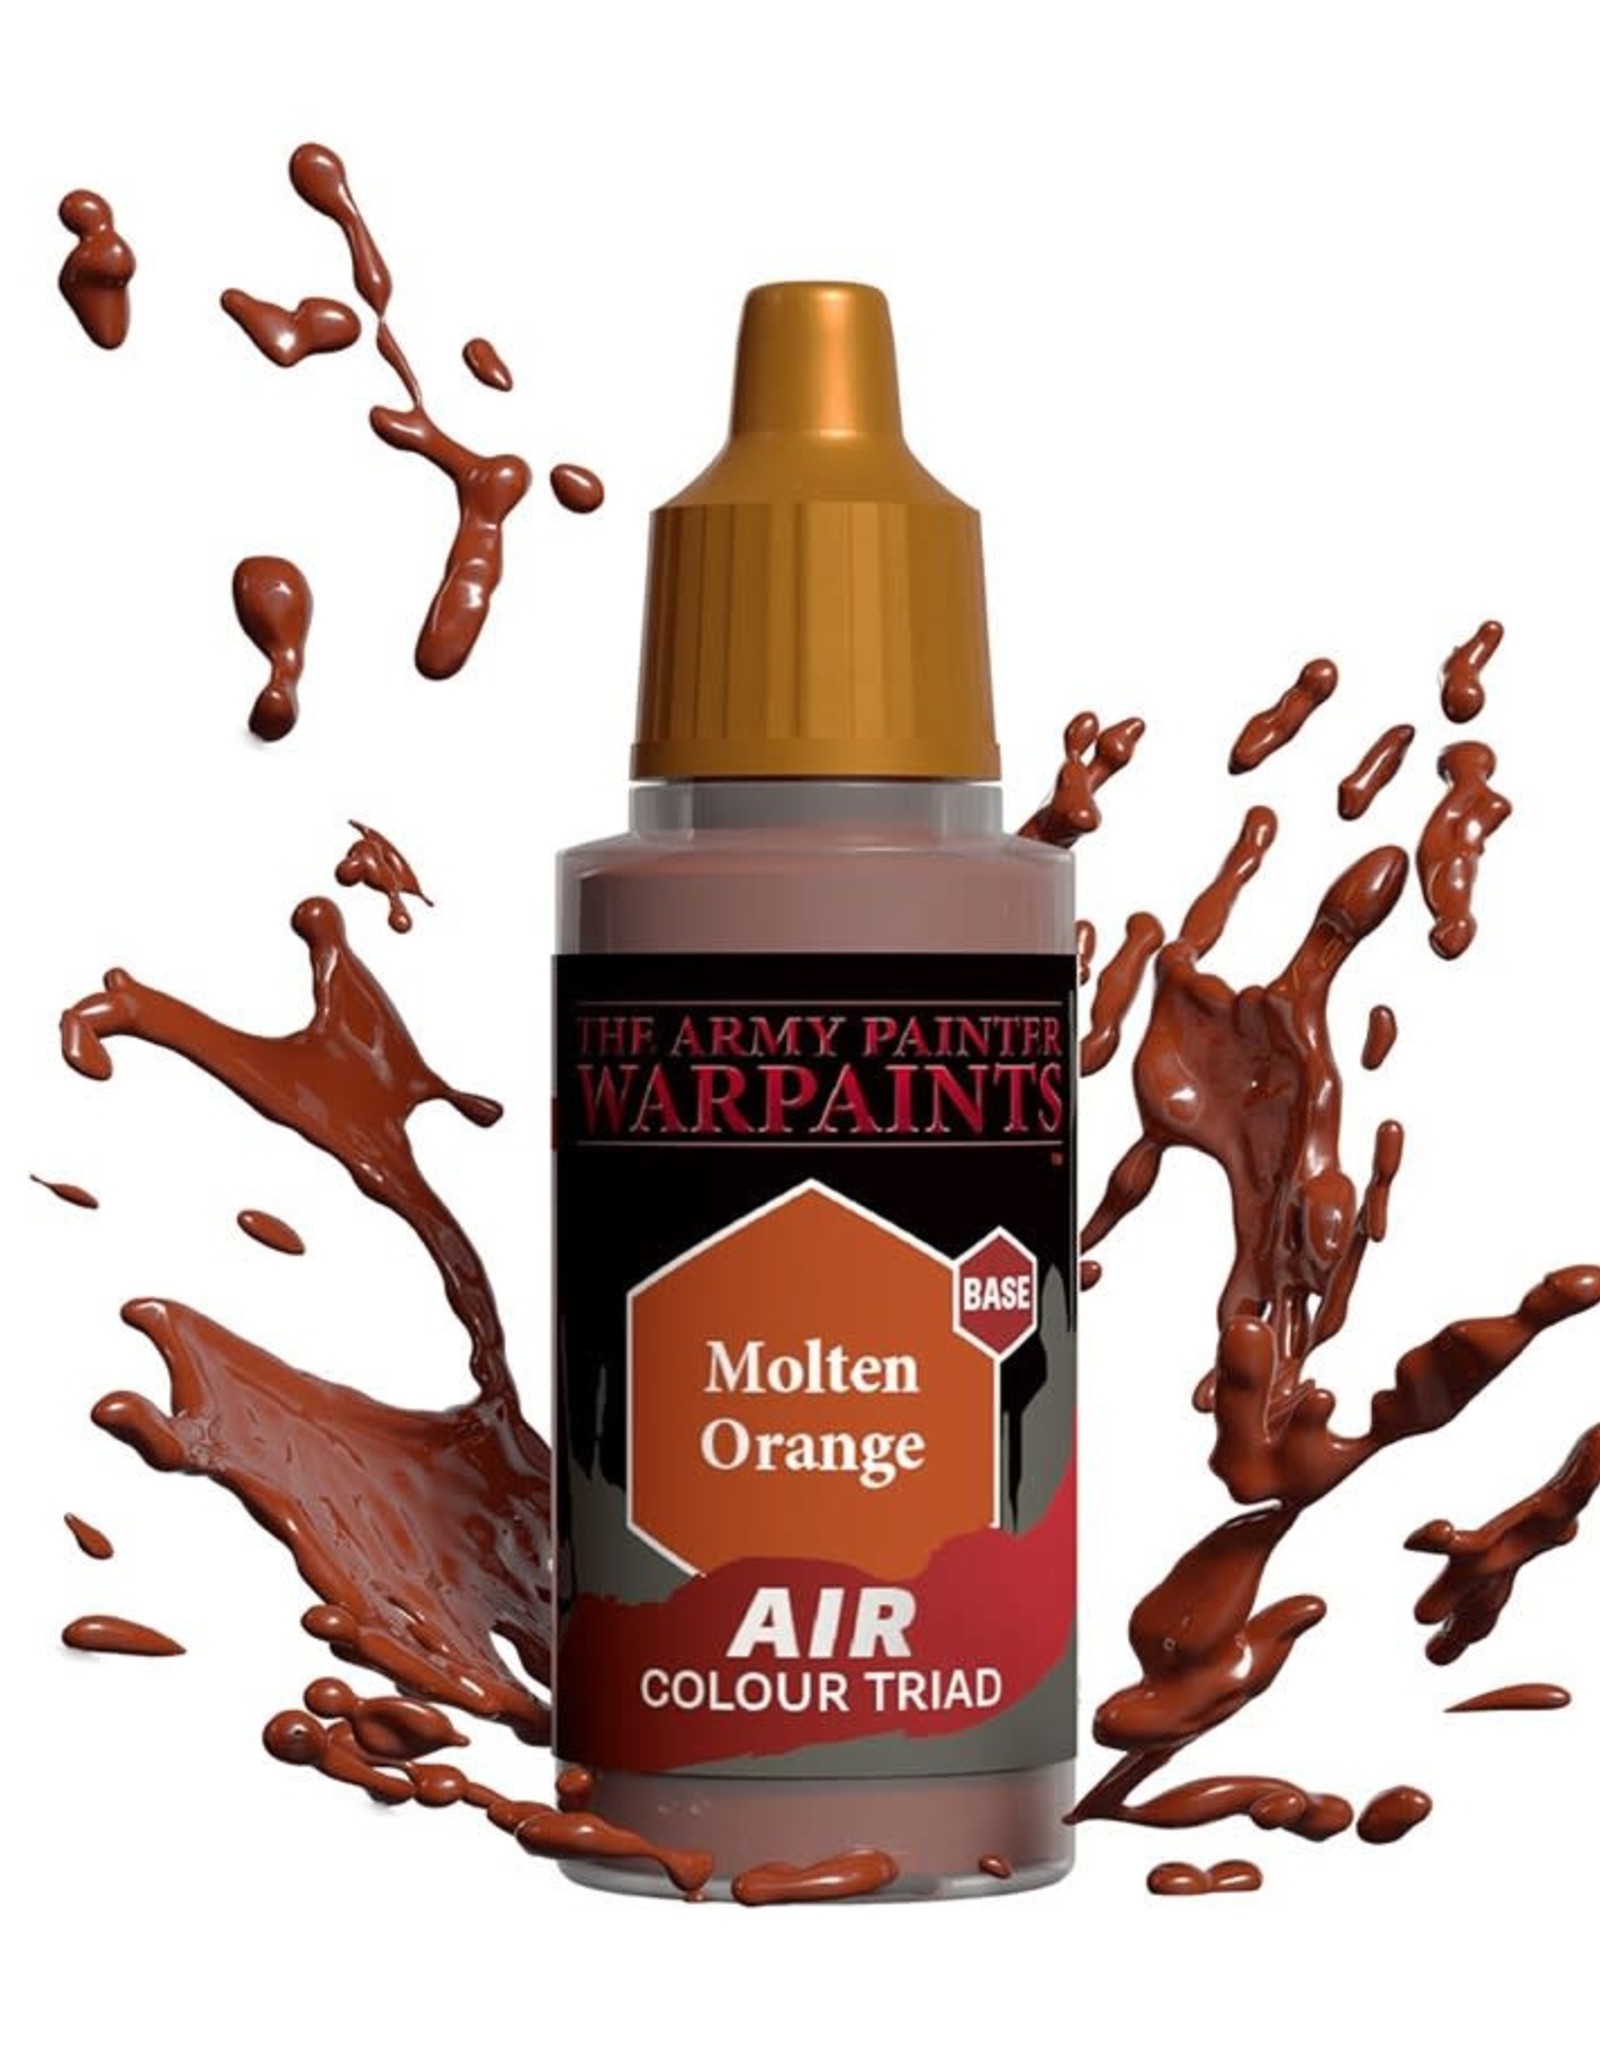 Warpaints Air: Molten Orange